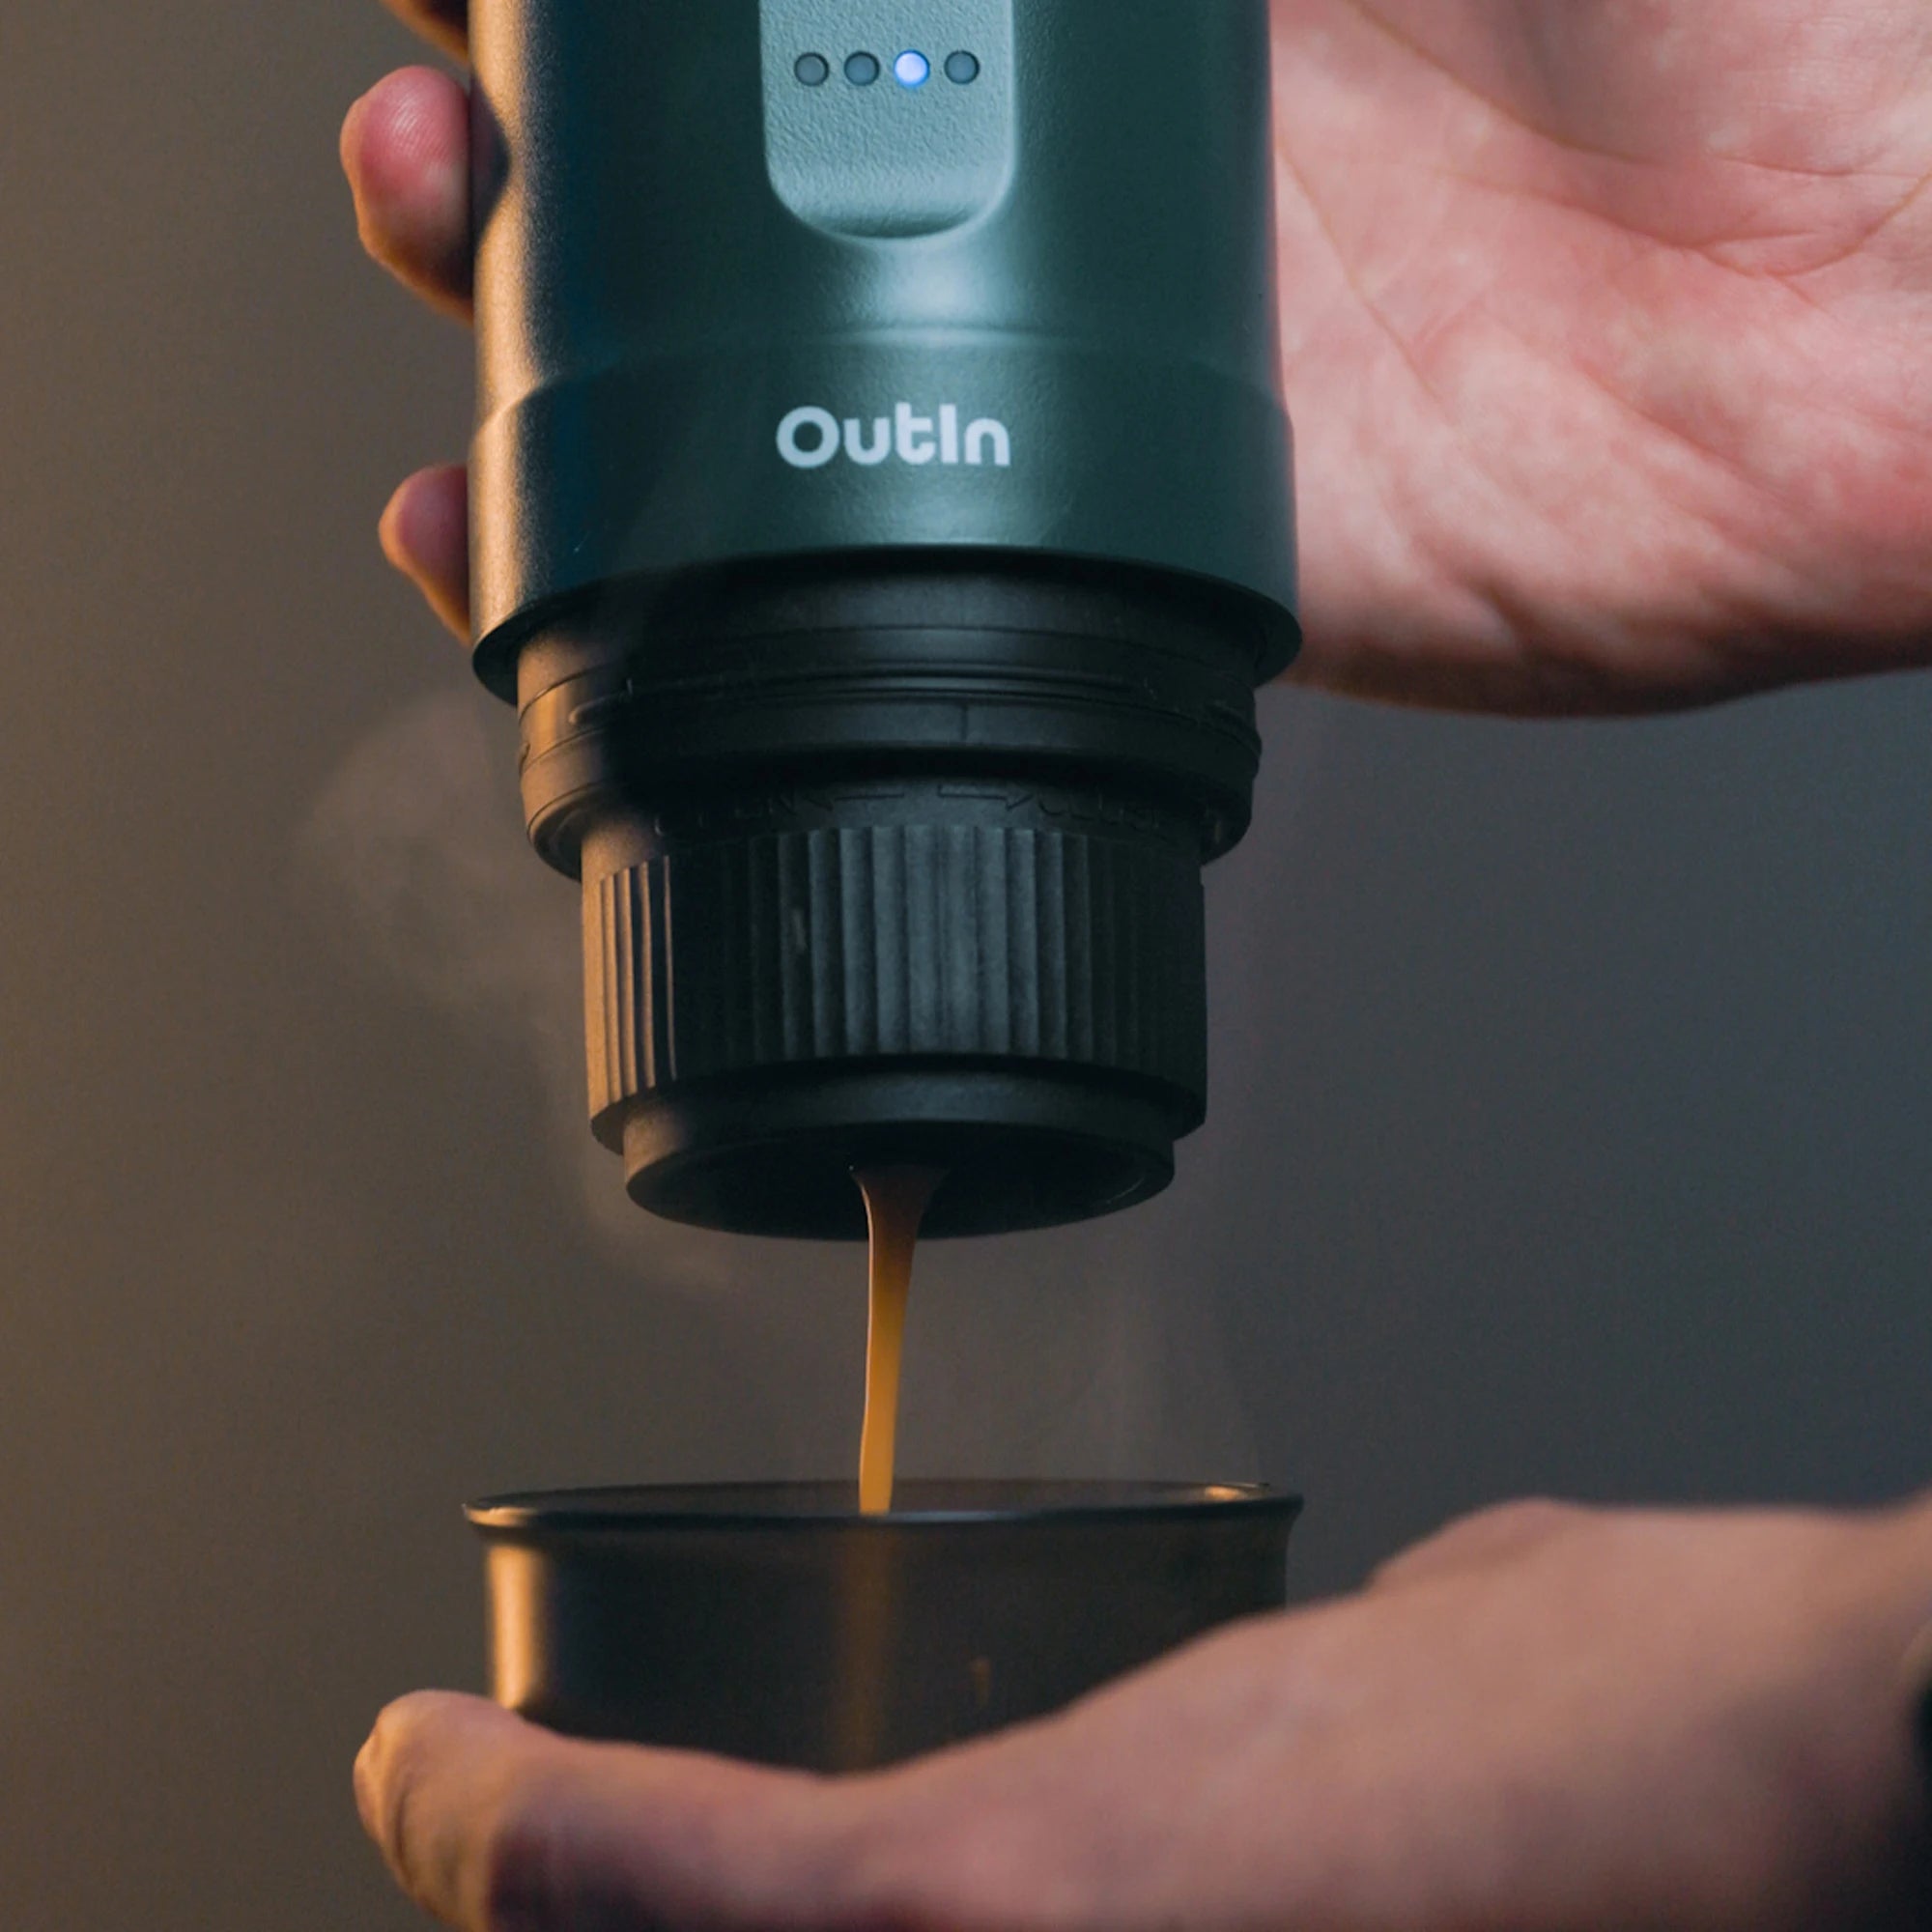 Outin Nano | Portable Electric Espresso Maker | Travel Coffee Machine